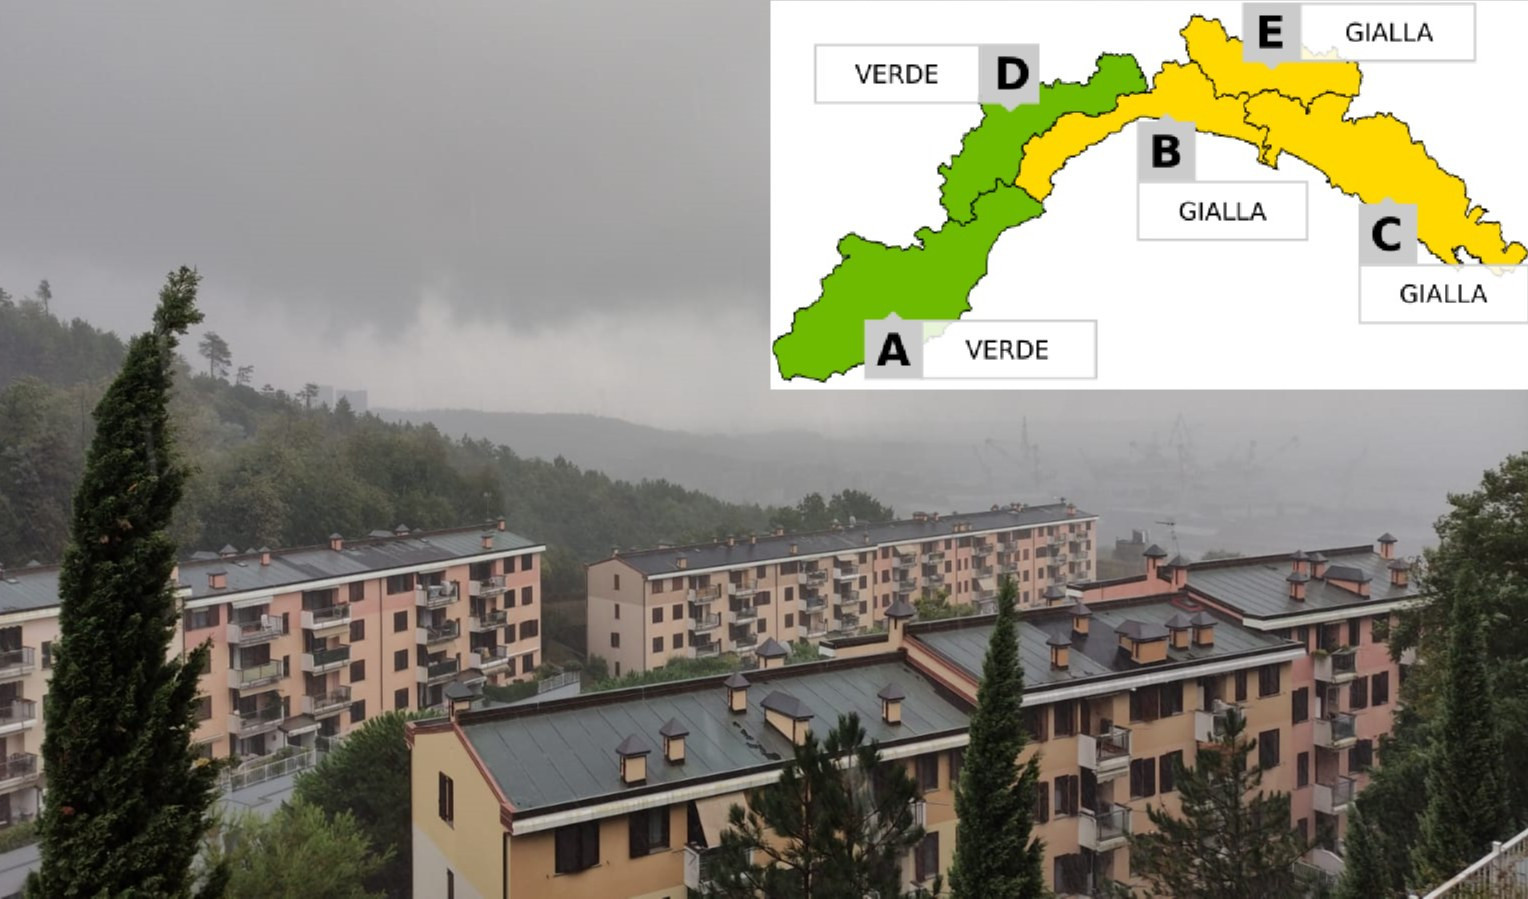 Torna la pioggia in Liguria, allerta meteo gialla per temporali fino alle 15